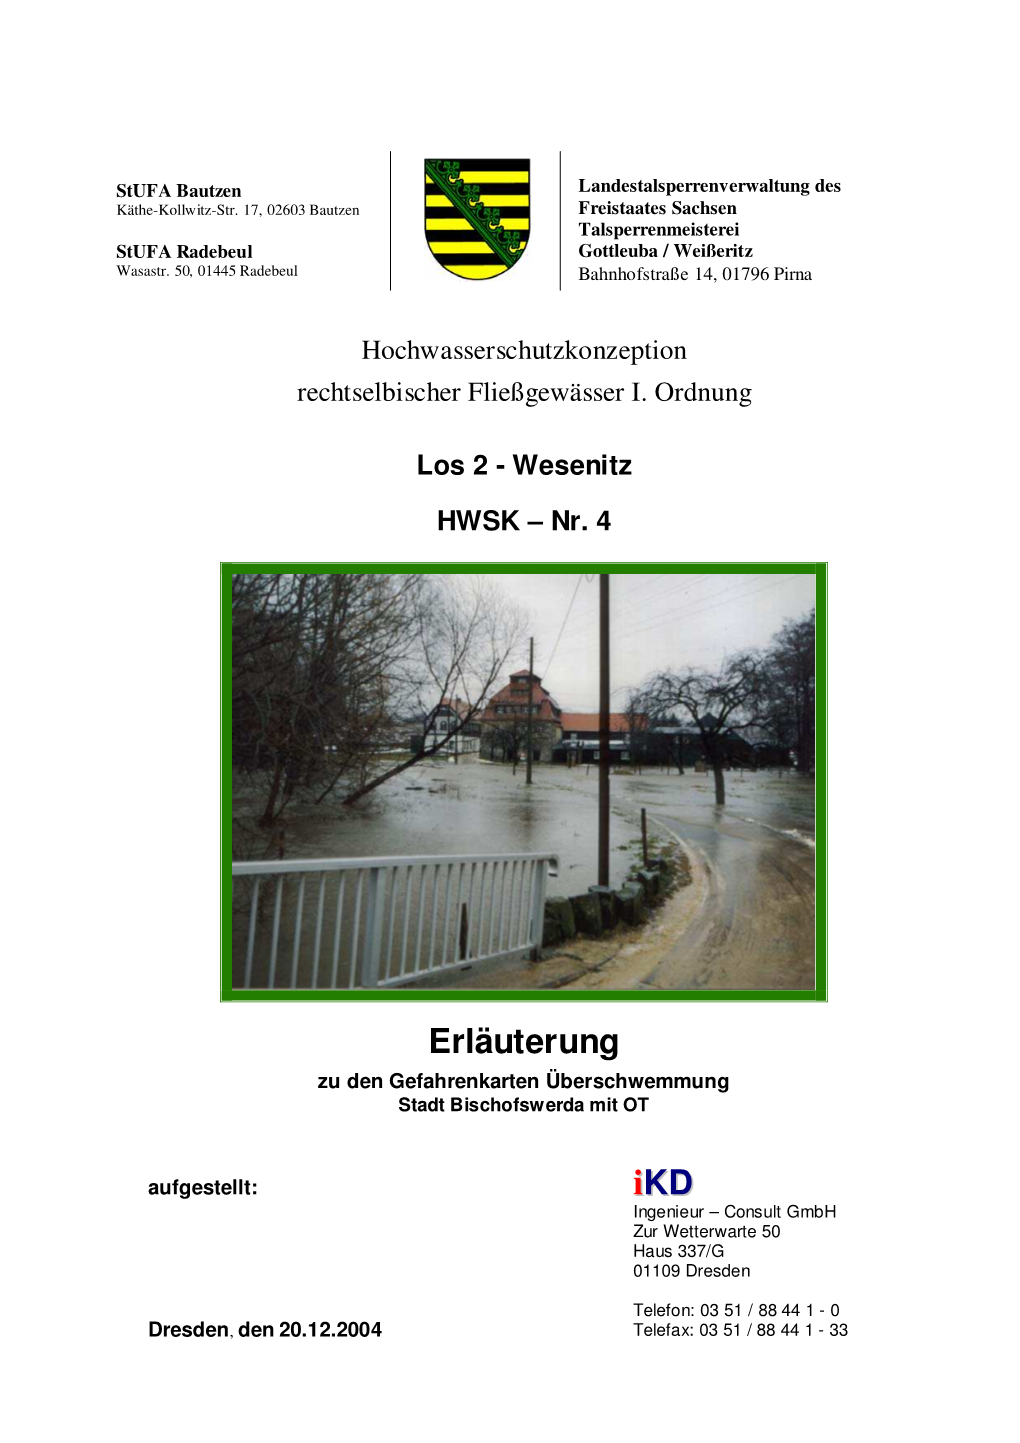 HWSK-Nr. 4, Gefahrenkarte Stadt Bischofswerda